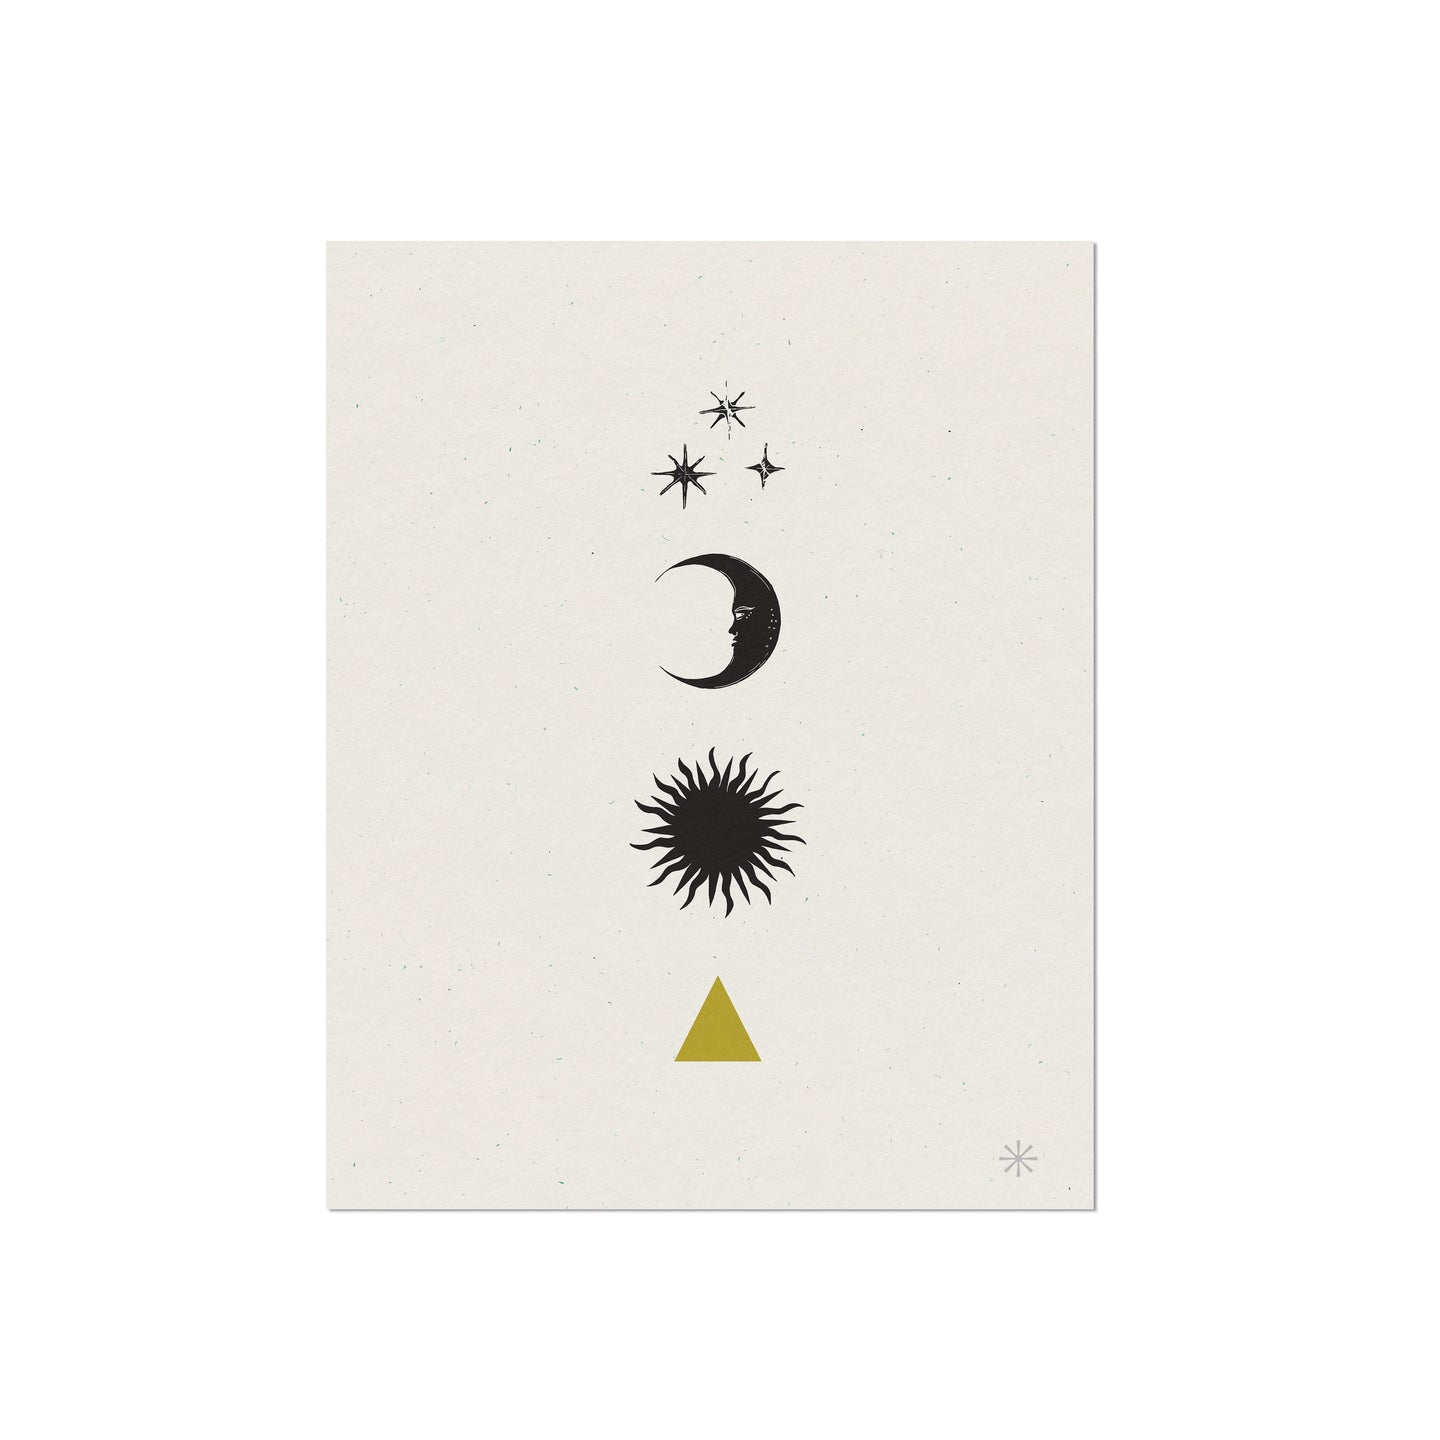 Minimalist Celestial Art Print, Sun, Moon, Stars